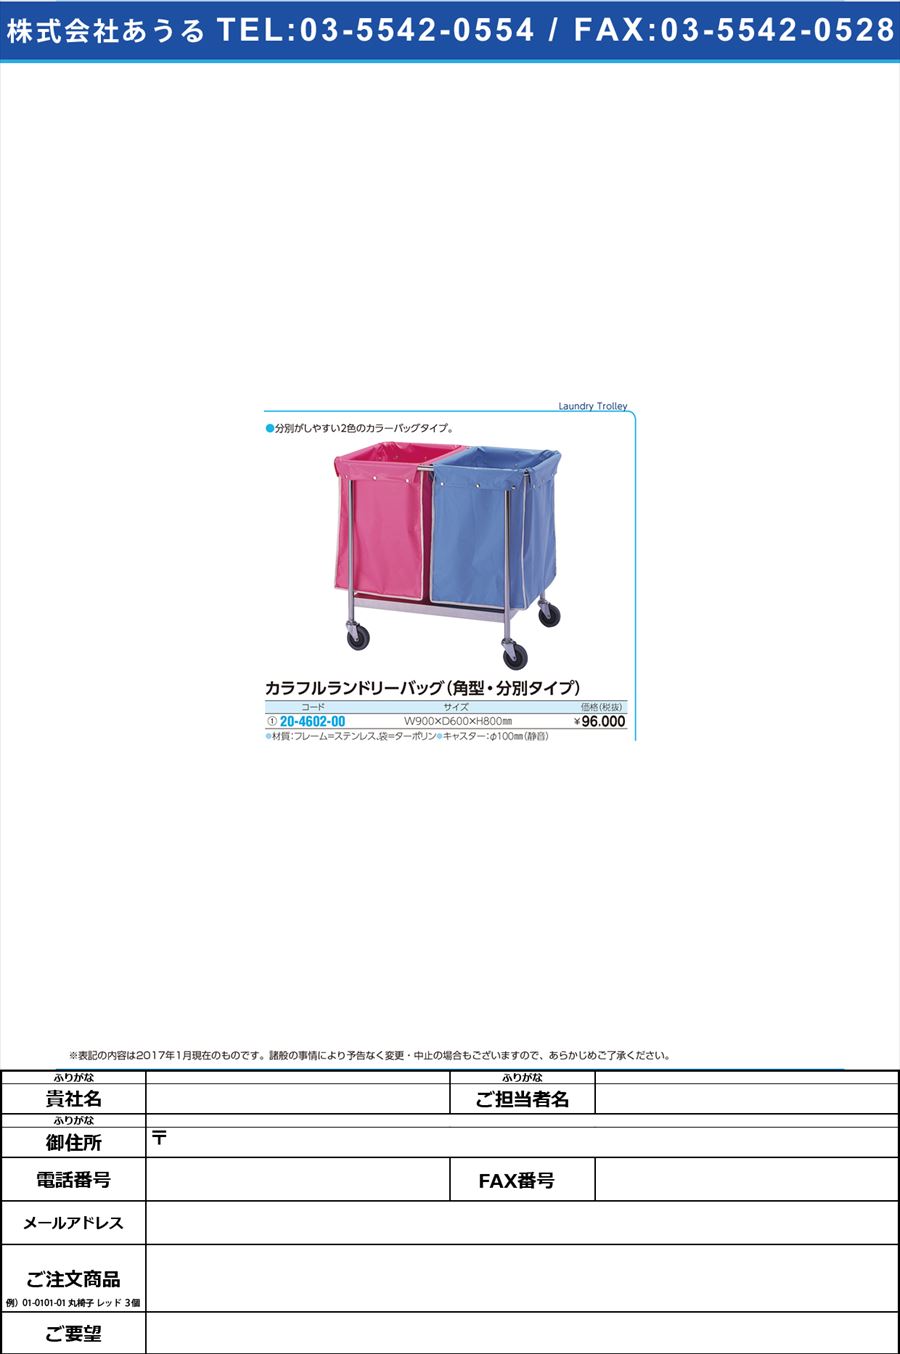 カラフルランドリーバッグ 角型・分別 ｶﾗﾌﾙﾗﾝﾄﾞﾘｰﾊﾞｯｸﾞ SK-246A(20-4602-00)【1台単位】【2017年カタログ商品】